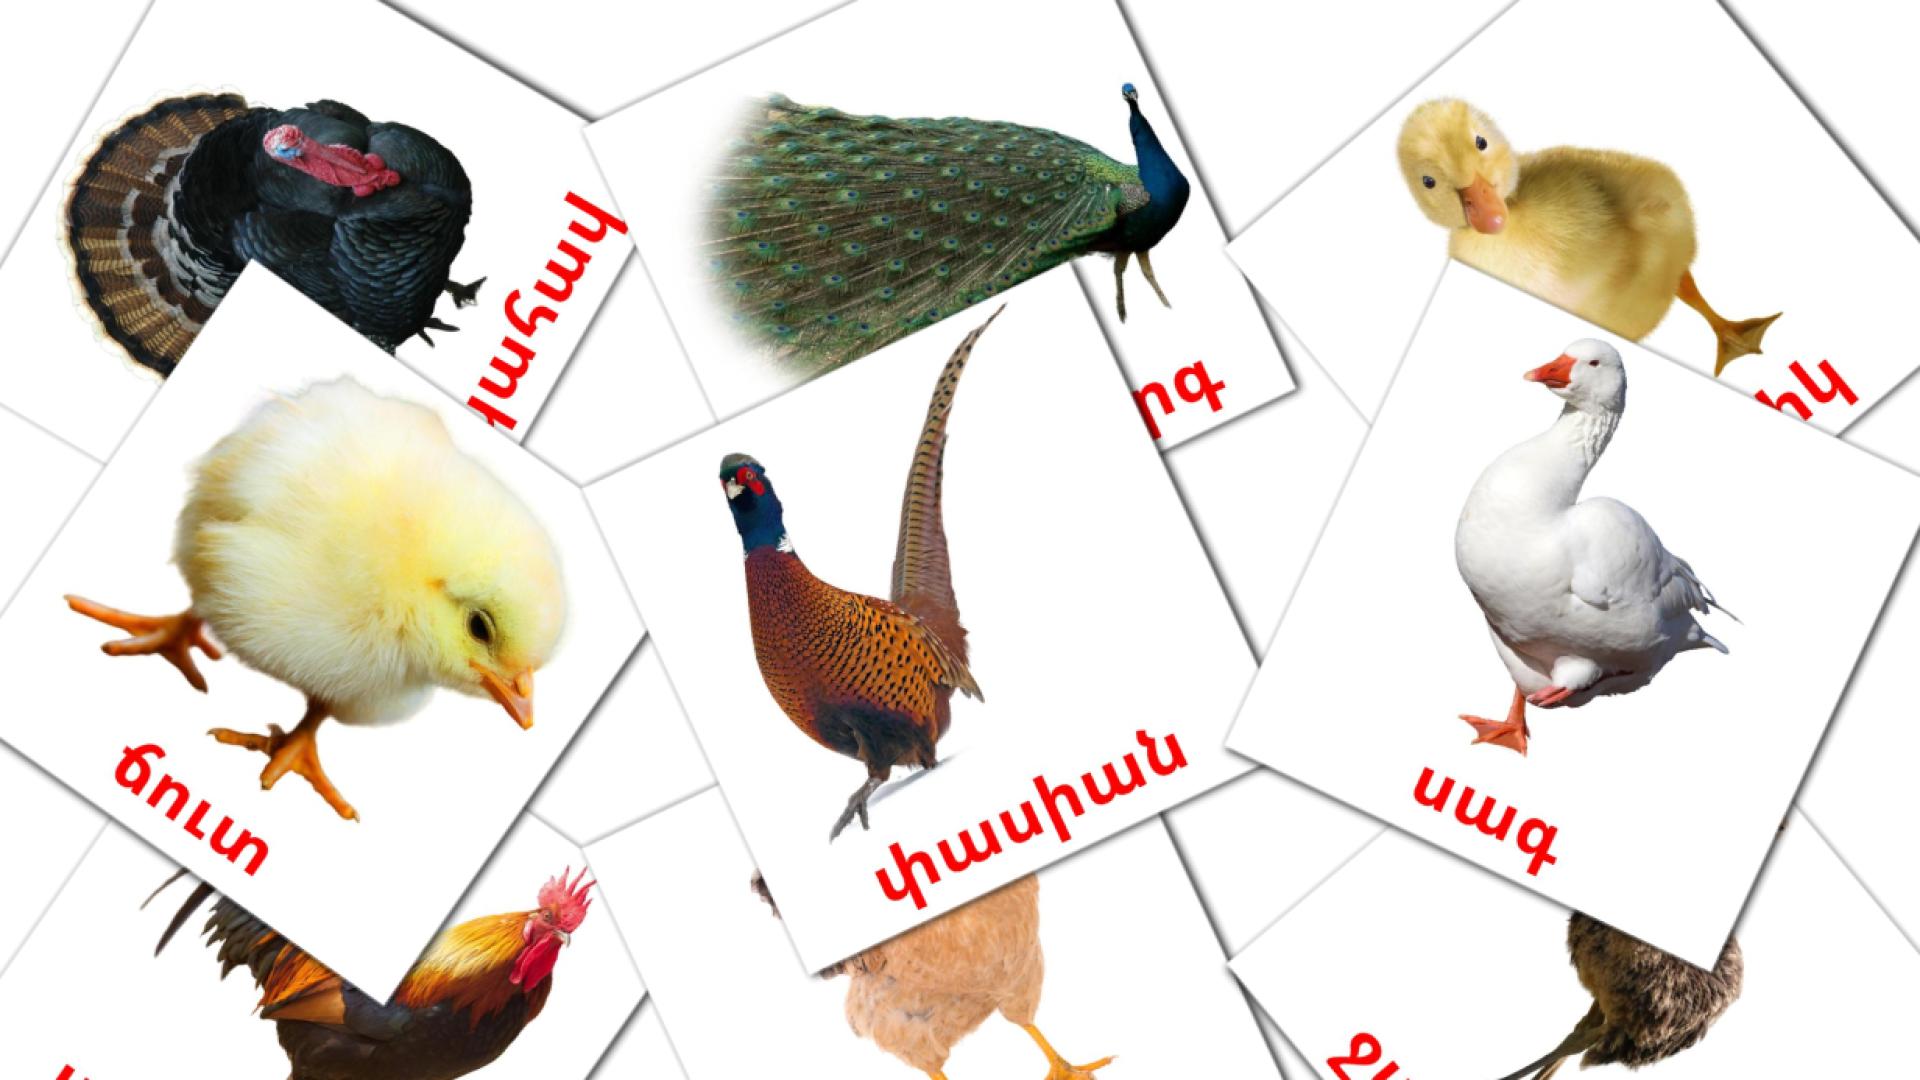 Uccelli di fattoria - Schede di vocabolario armeno